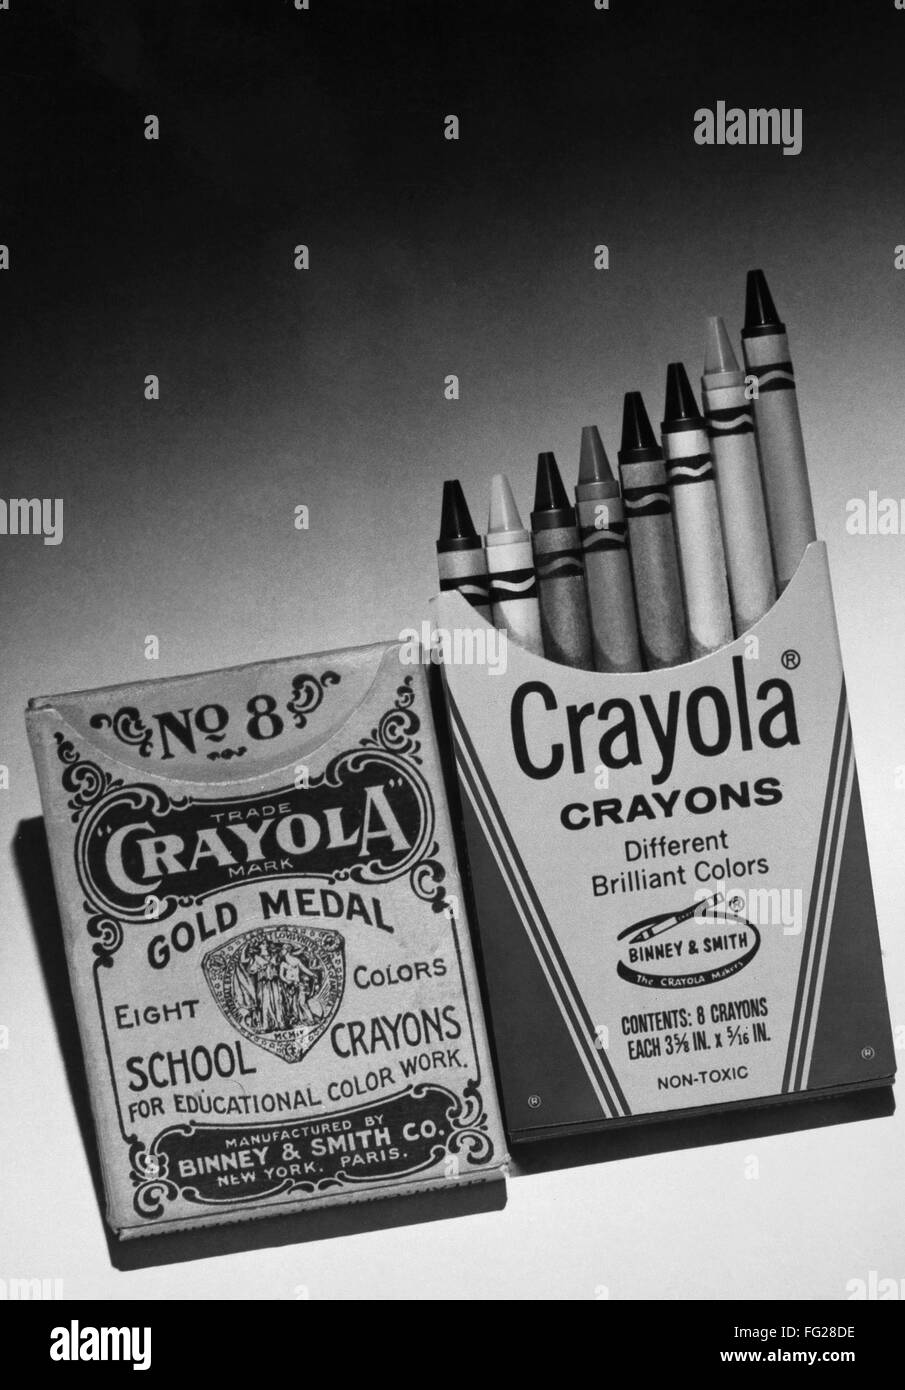 CRAYOLA crayones. /Nizquierda: Original caja de crayones Crayola, c1905. Derecha: caja de crayones Crayola, c1970. Foto de stock